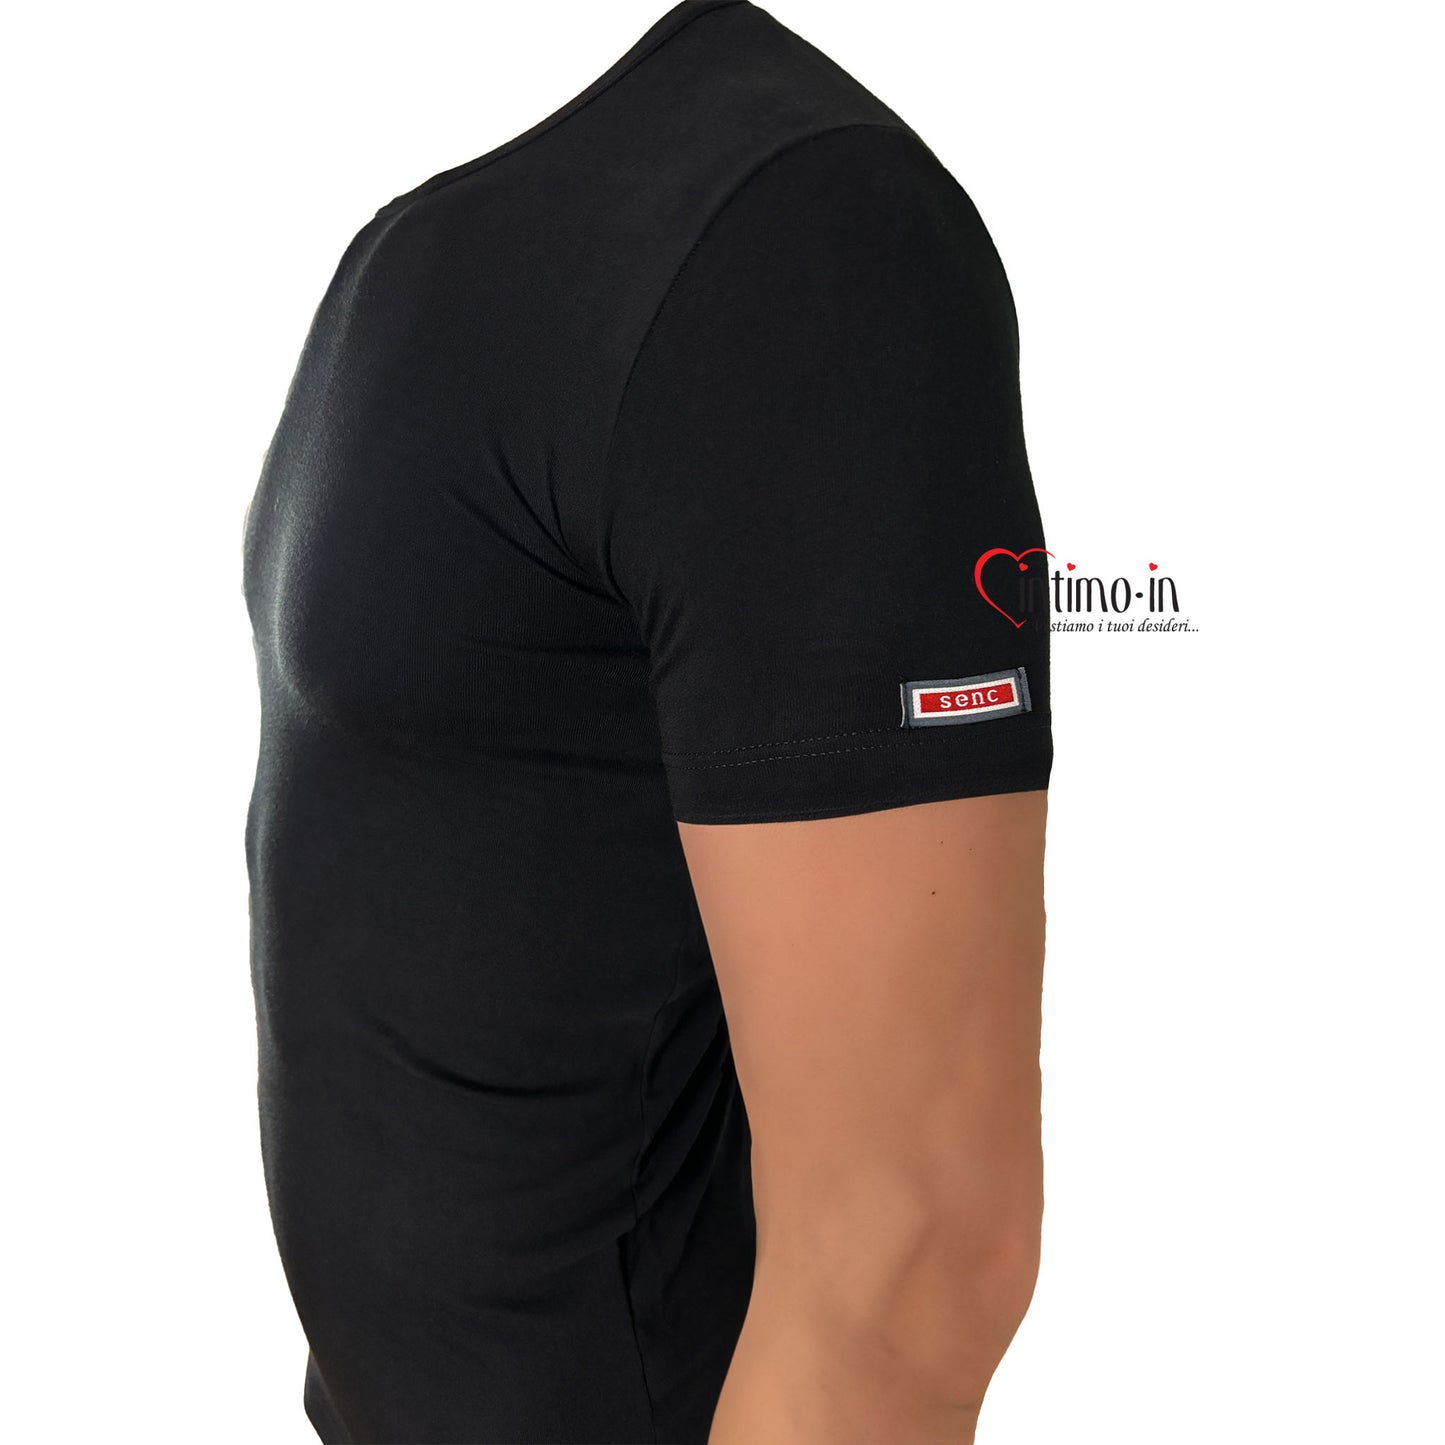 T-Shirt da uomo in cotone elastico scollo tondo Bipack